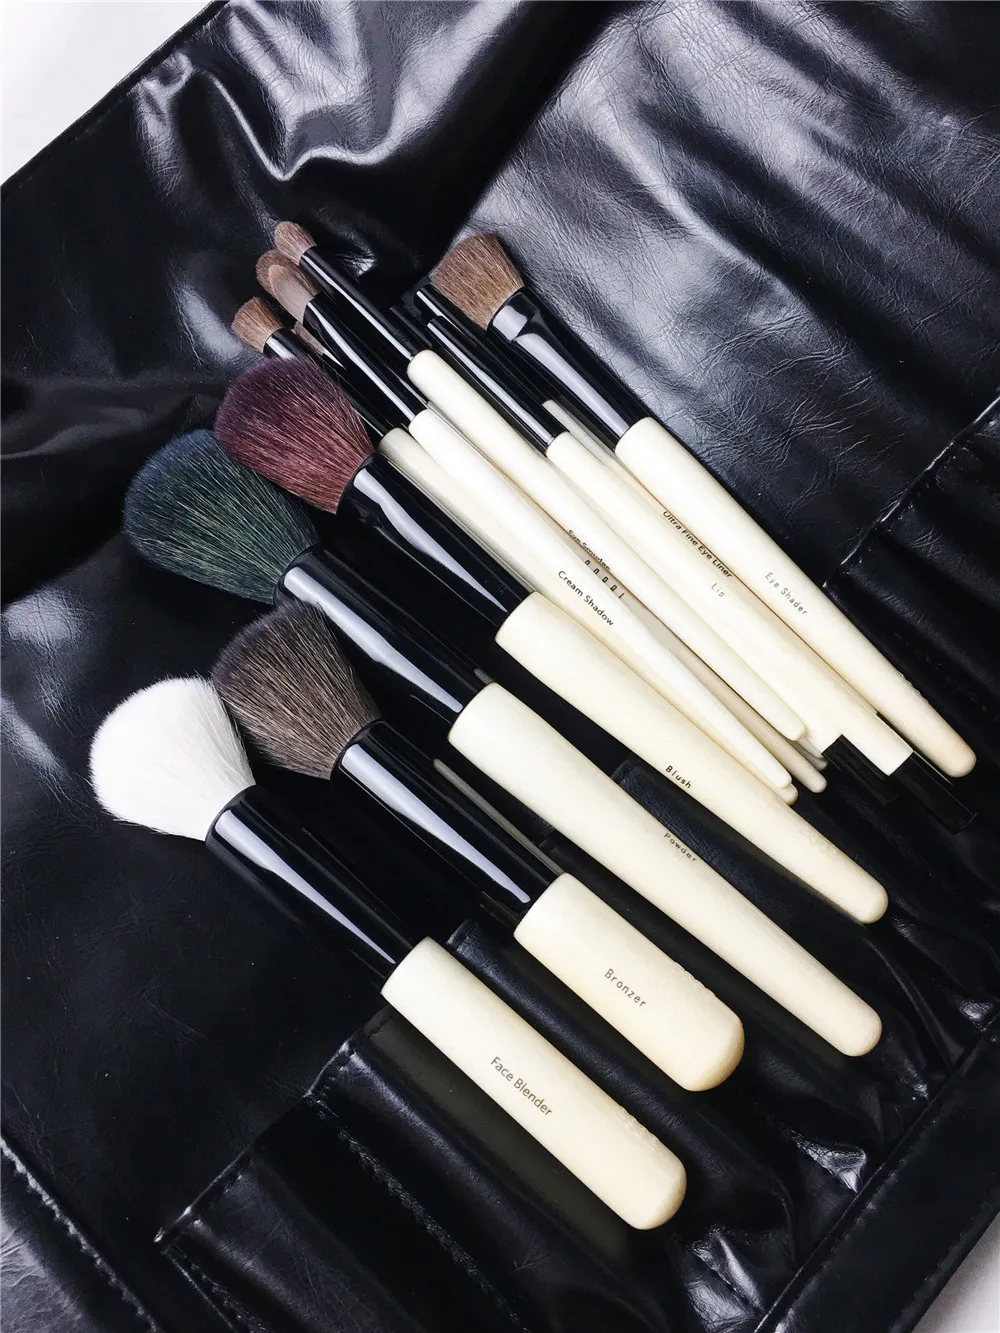 18 brosses Brushes de maquillage complètes Ensemble avec poche - Poignée en bois de qualité Kit de brosse de beauté Kit cosmétique Méximeux